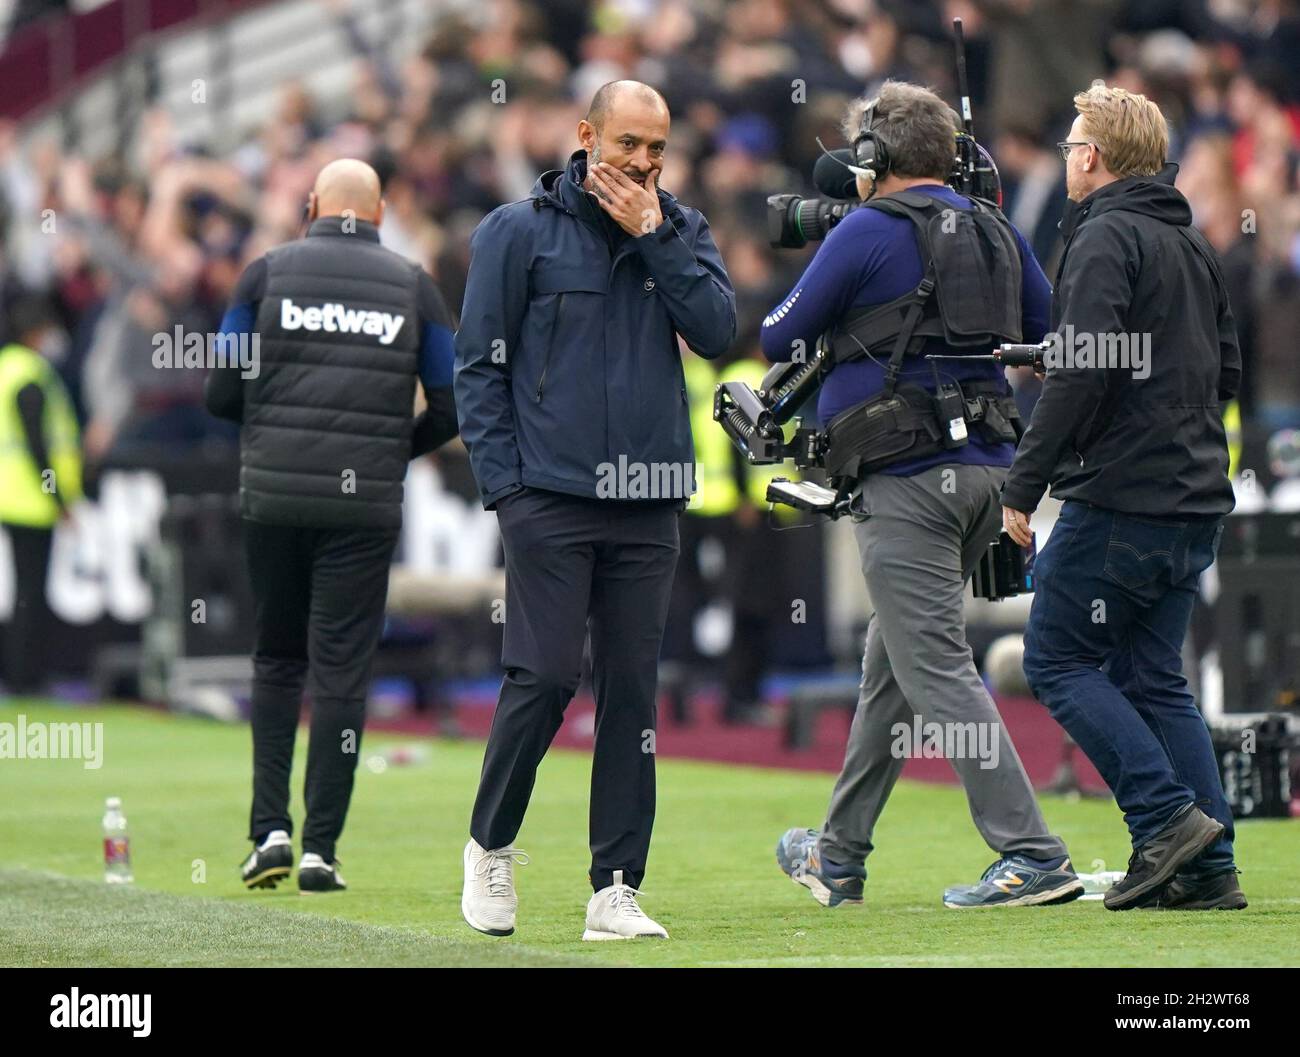 Le directeur de Tottenham Hotspur Nuno Espirito Santo semble abattu après le match de la Premier League au London Stadium, Londres.Date de la photo: Dimanche 24 octobre 2021. Banque D'Images